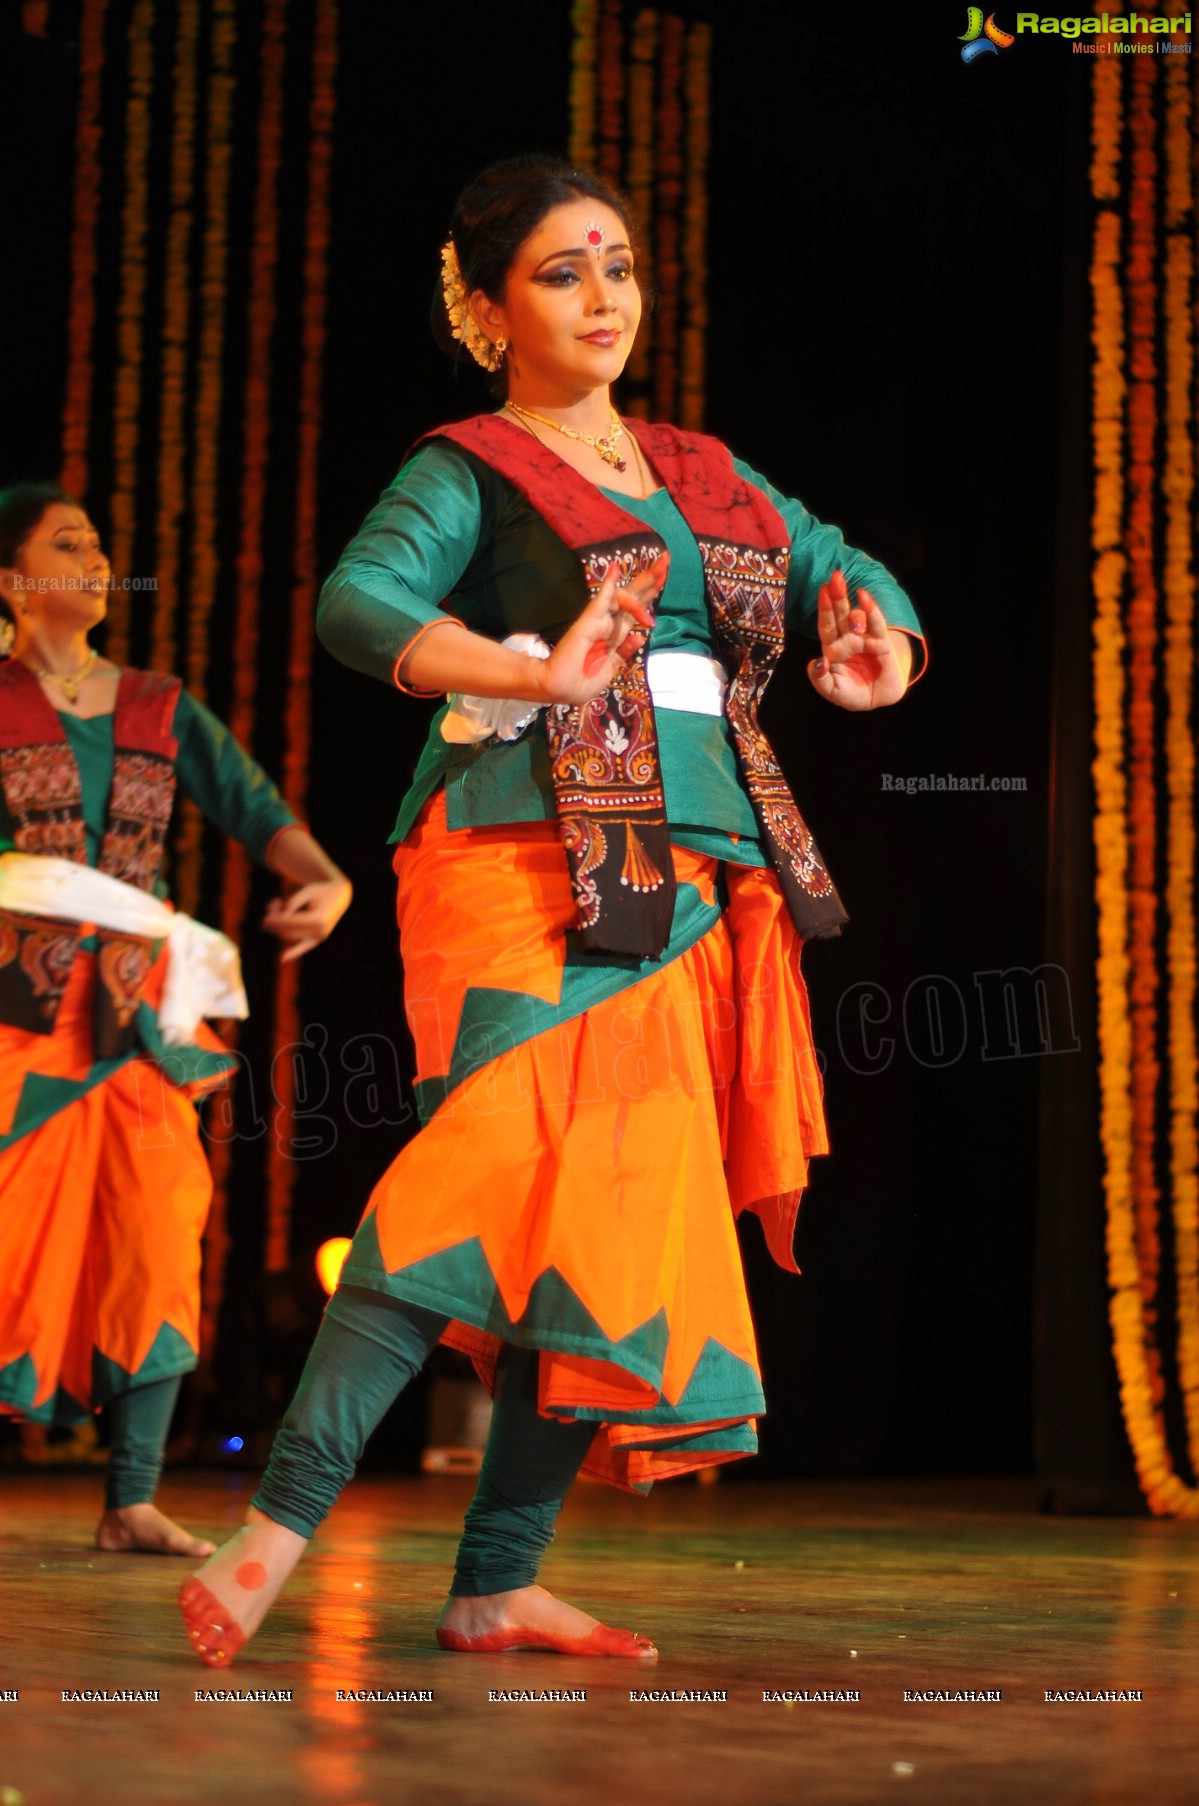 Jana Gana Mana 100 Years Celebrations: Sharmistha Mukherjee's Dance Program at Ravindra Bharathi, Hyderabad